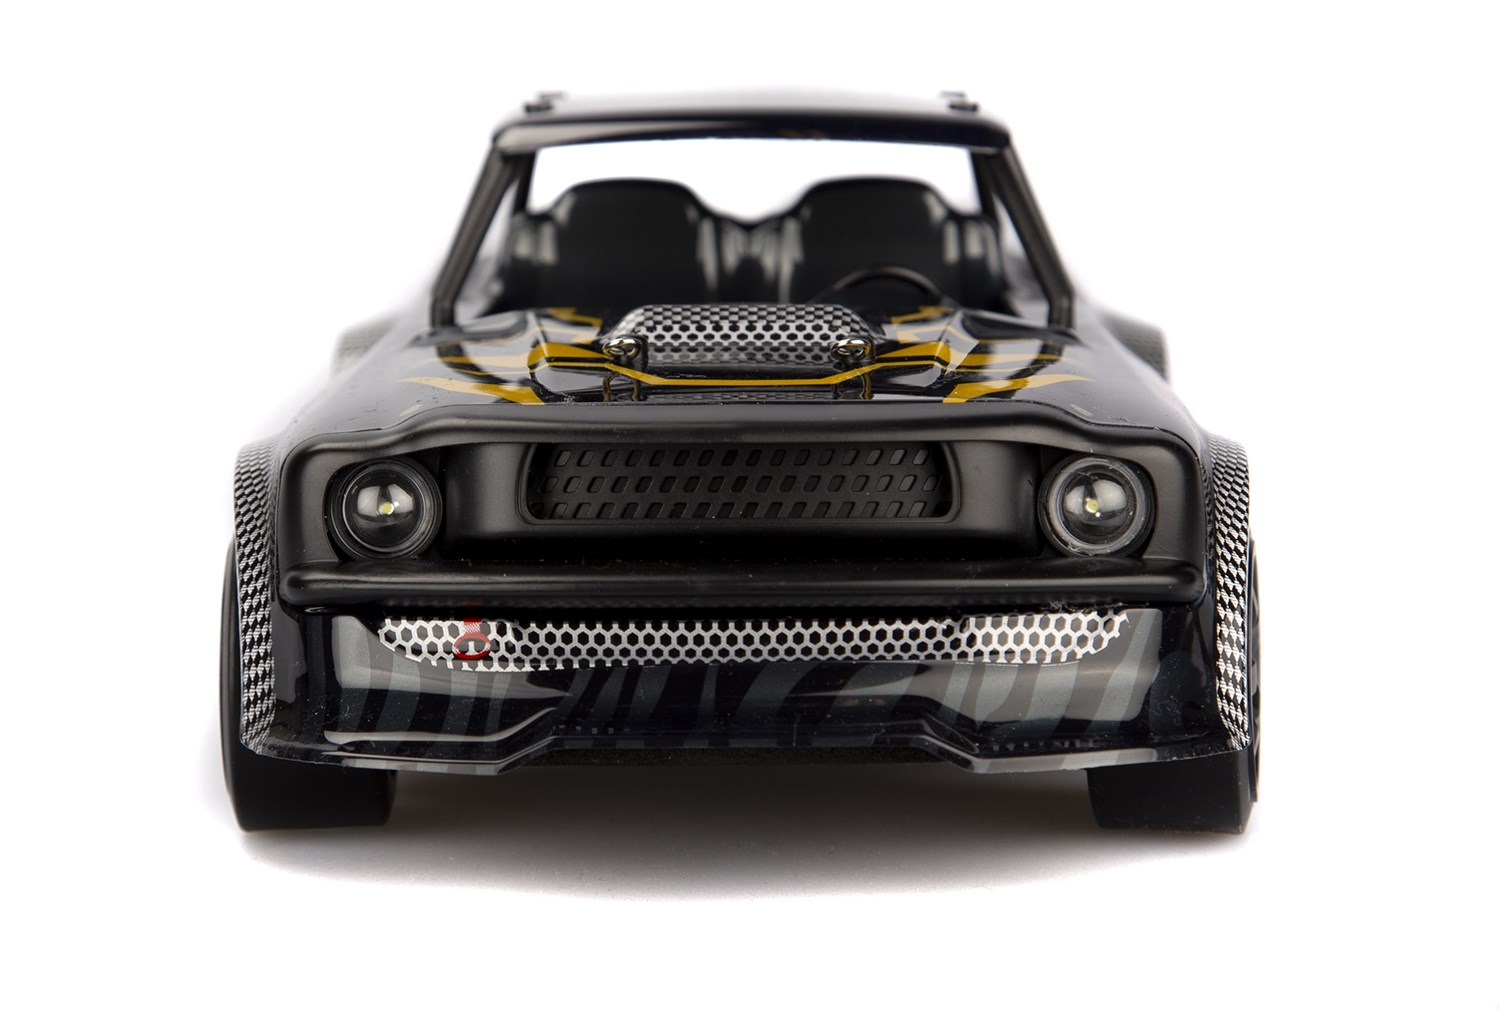 UDI Panther Speed/Drift - Gyro 4WD 1:16